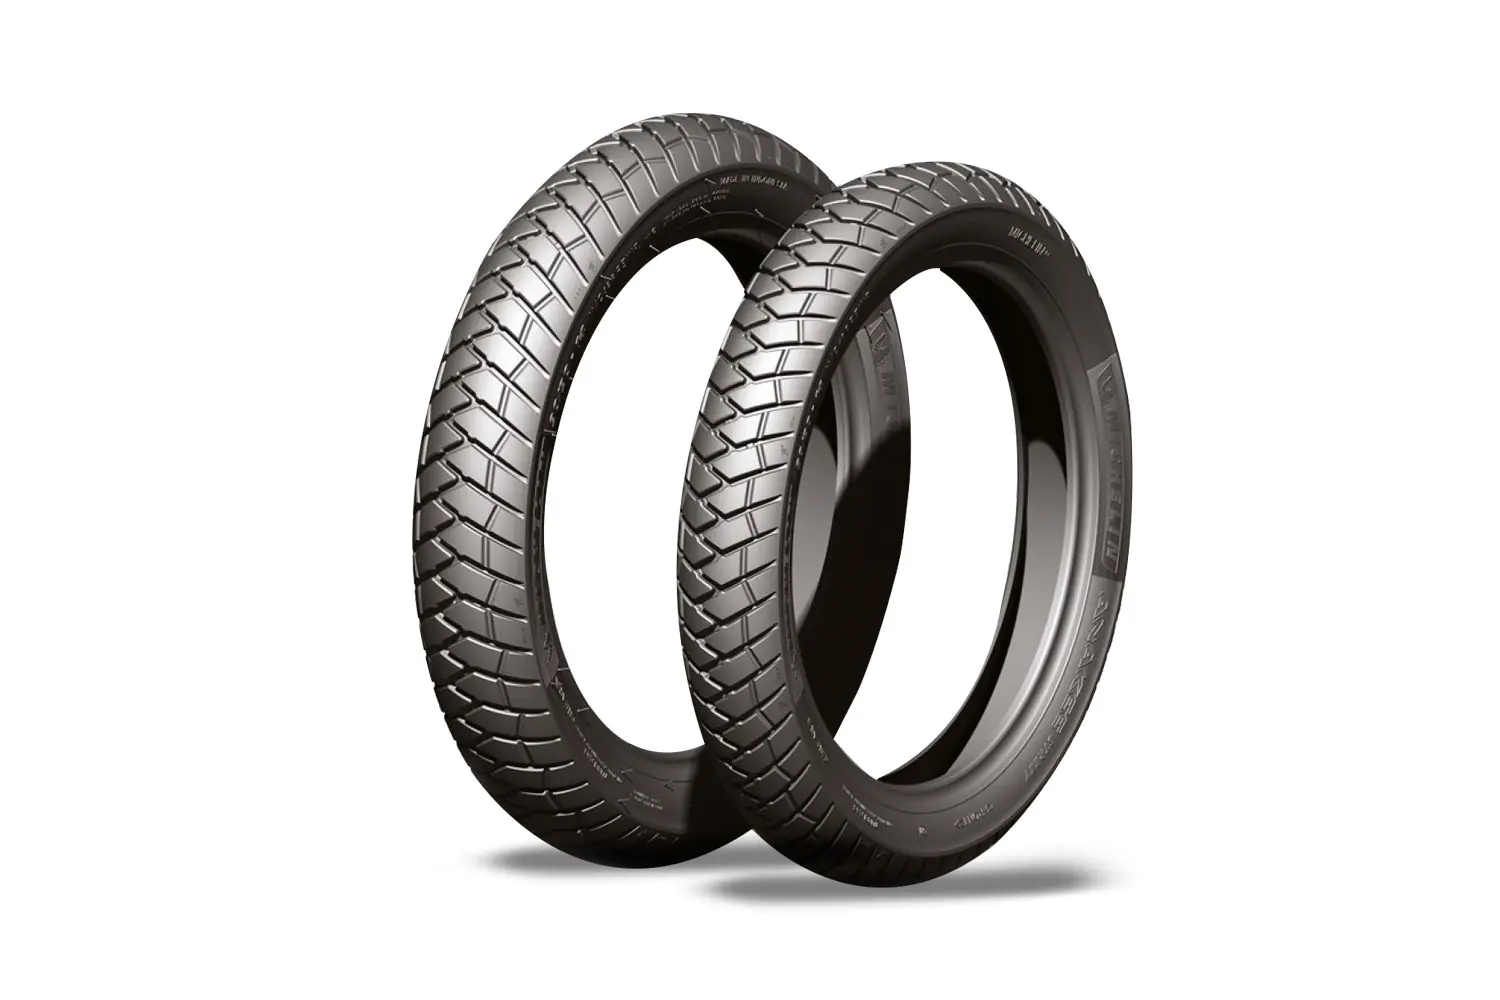 Michelin Michelin 120/90-17 64T ANAKEE STREET pneumatici nuovi Estivo 